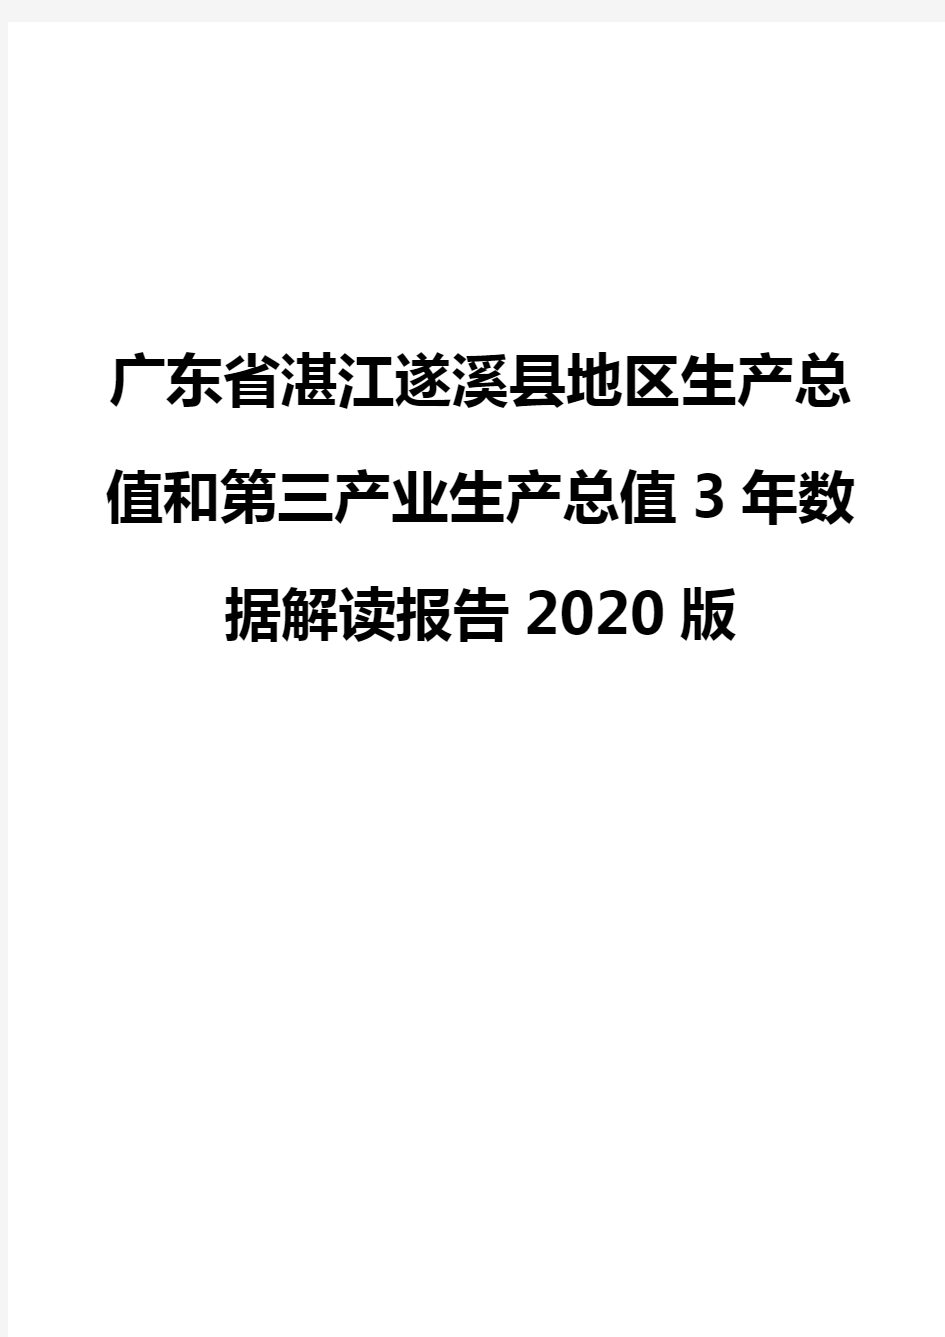 广东省湛江遂溪县地区生产总值和第三产业生产总值3年数据解读报告2020版